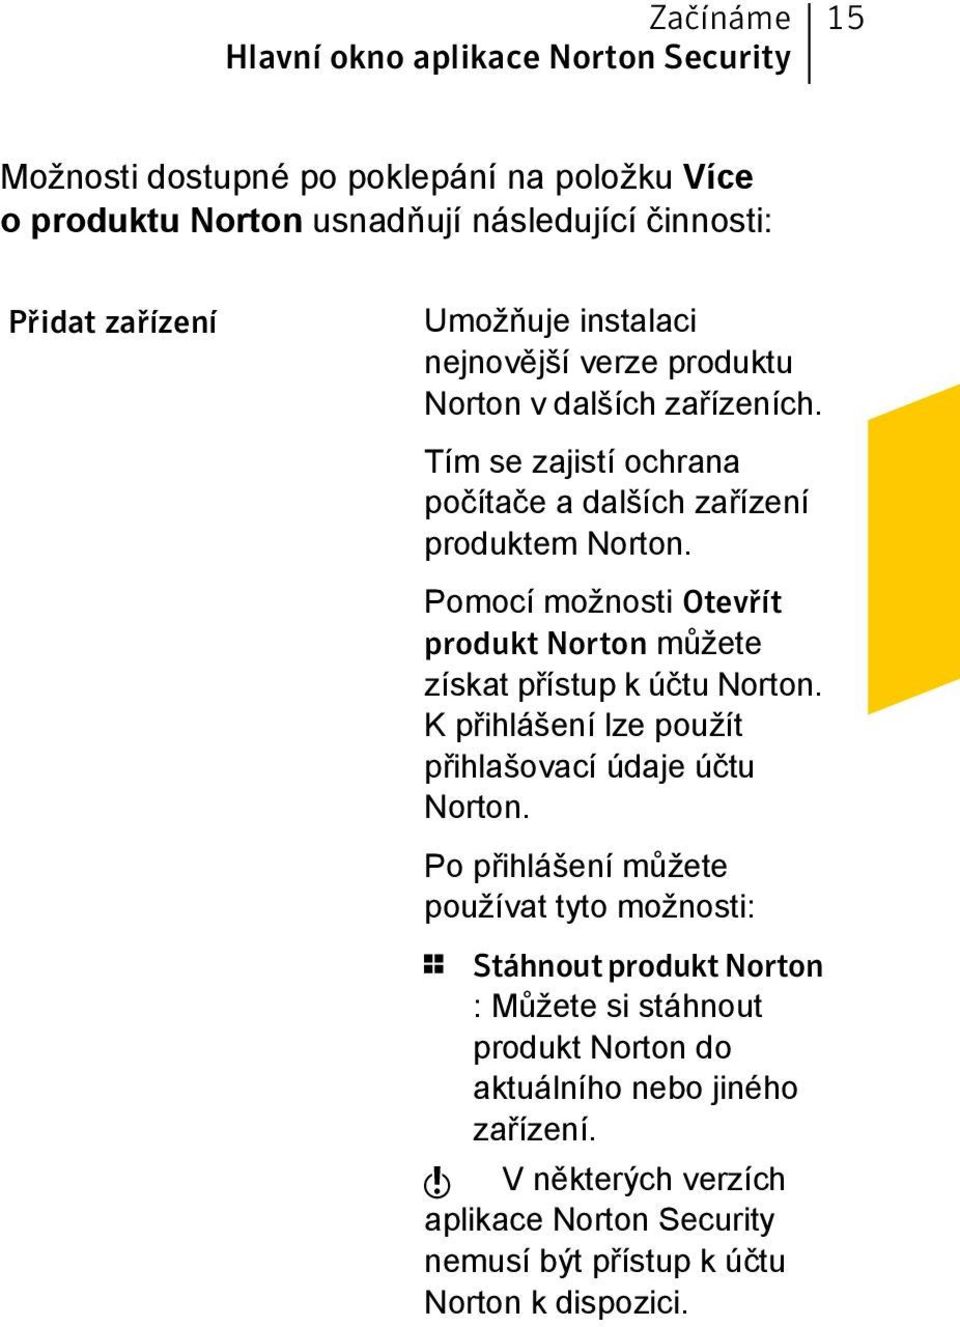 Pomocí možnosti Otevřít produkt Norton můžete získat přístup k účtu Norton. K přihlášení lze použít přihlašovací údaje účtu Norton.